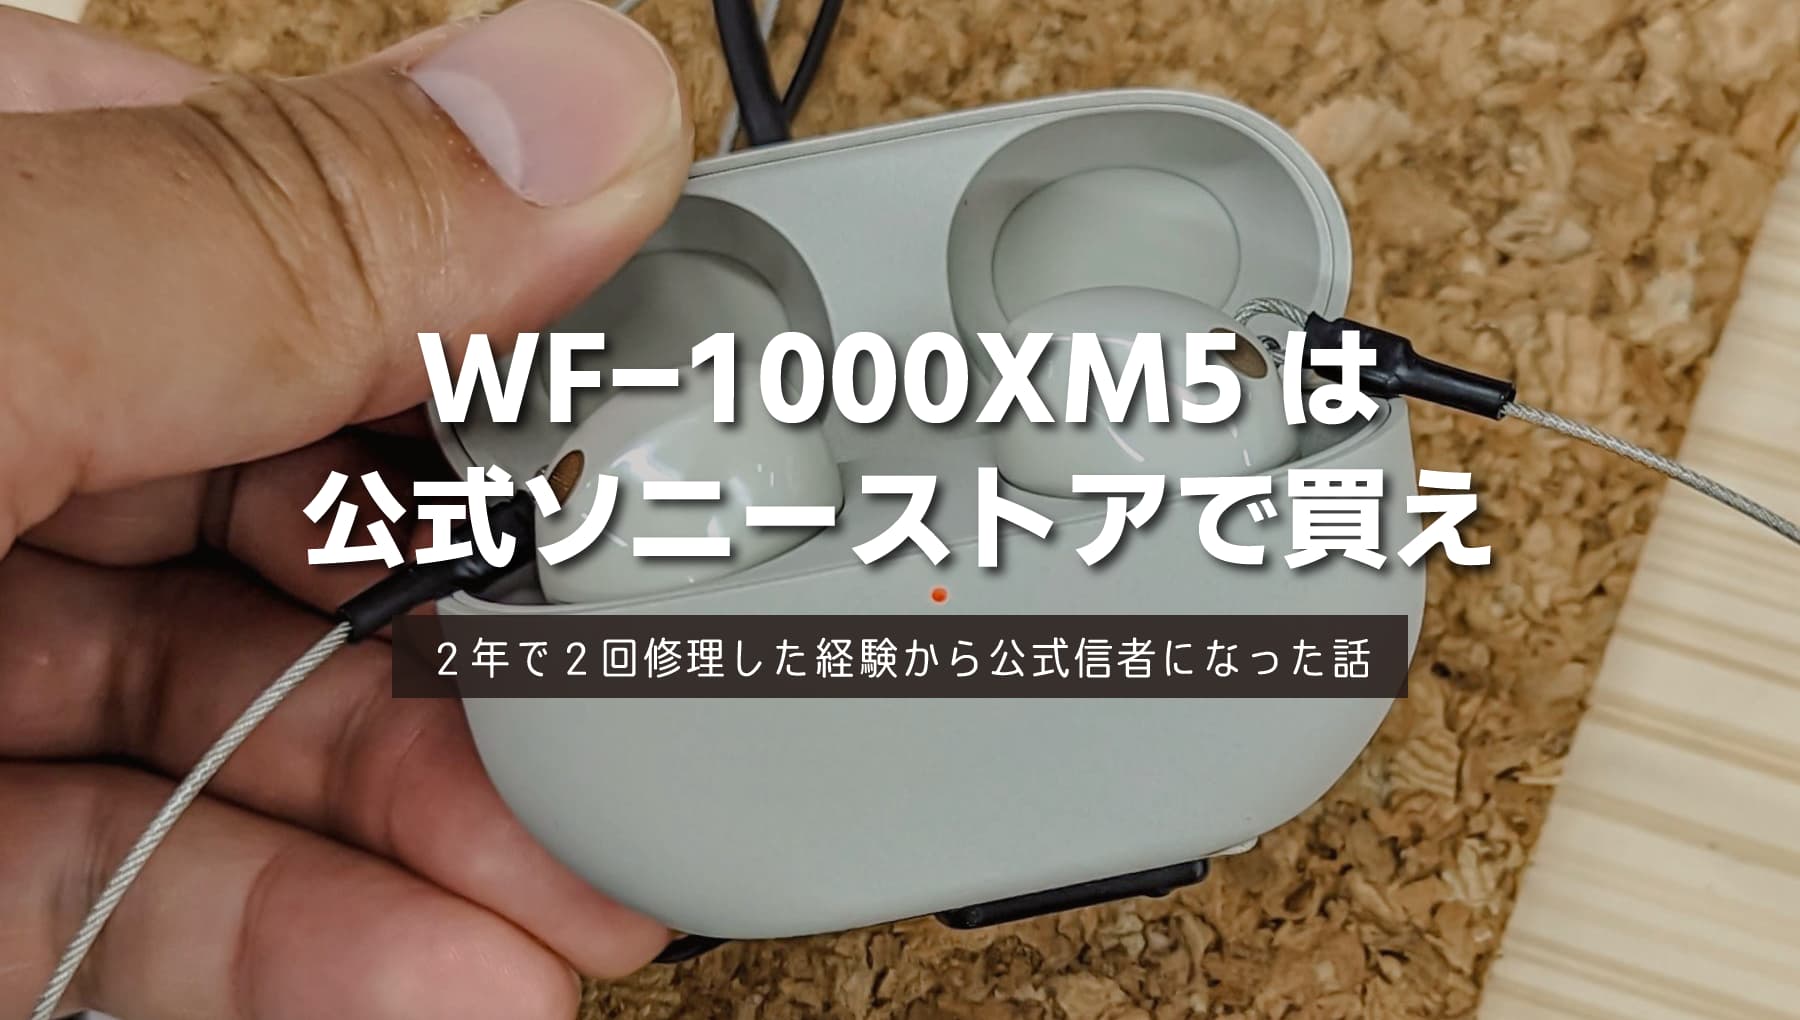 WF-1000XM5 安く買うならソニーストアがおすすめ【３年保証は重要】最安値だけで判断しないのが賢い買い方